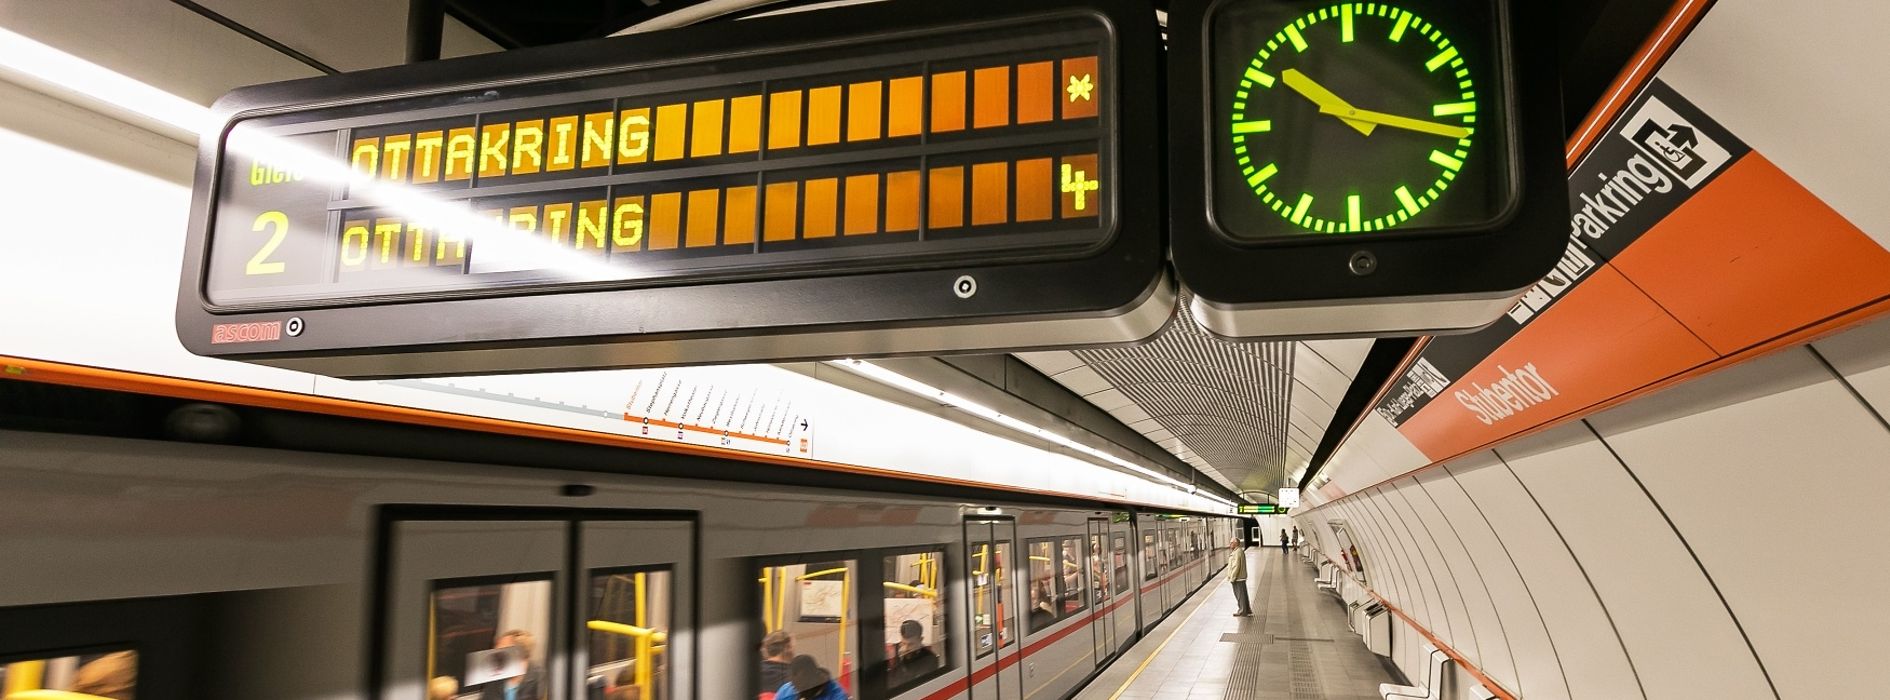 Informační panel ve vídeňském metru s hodinami